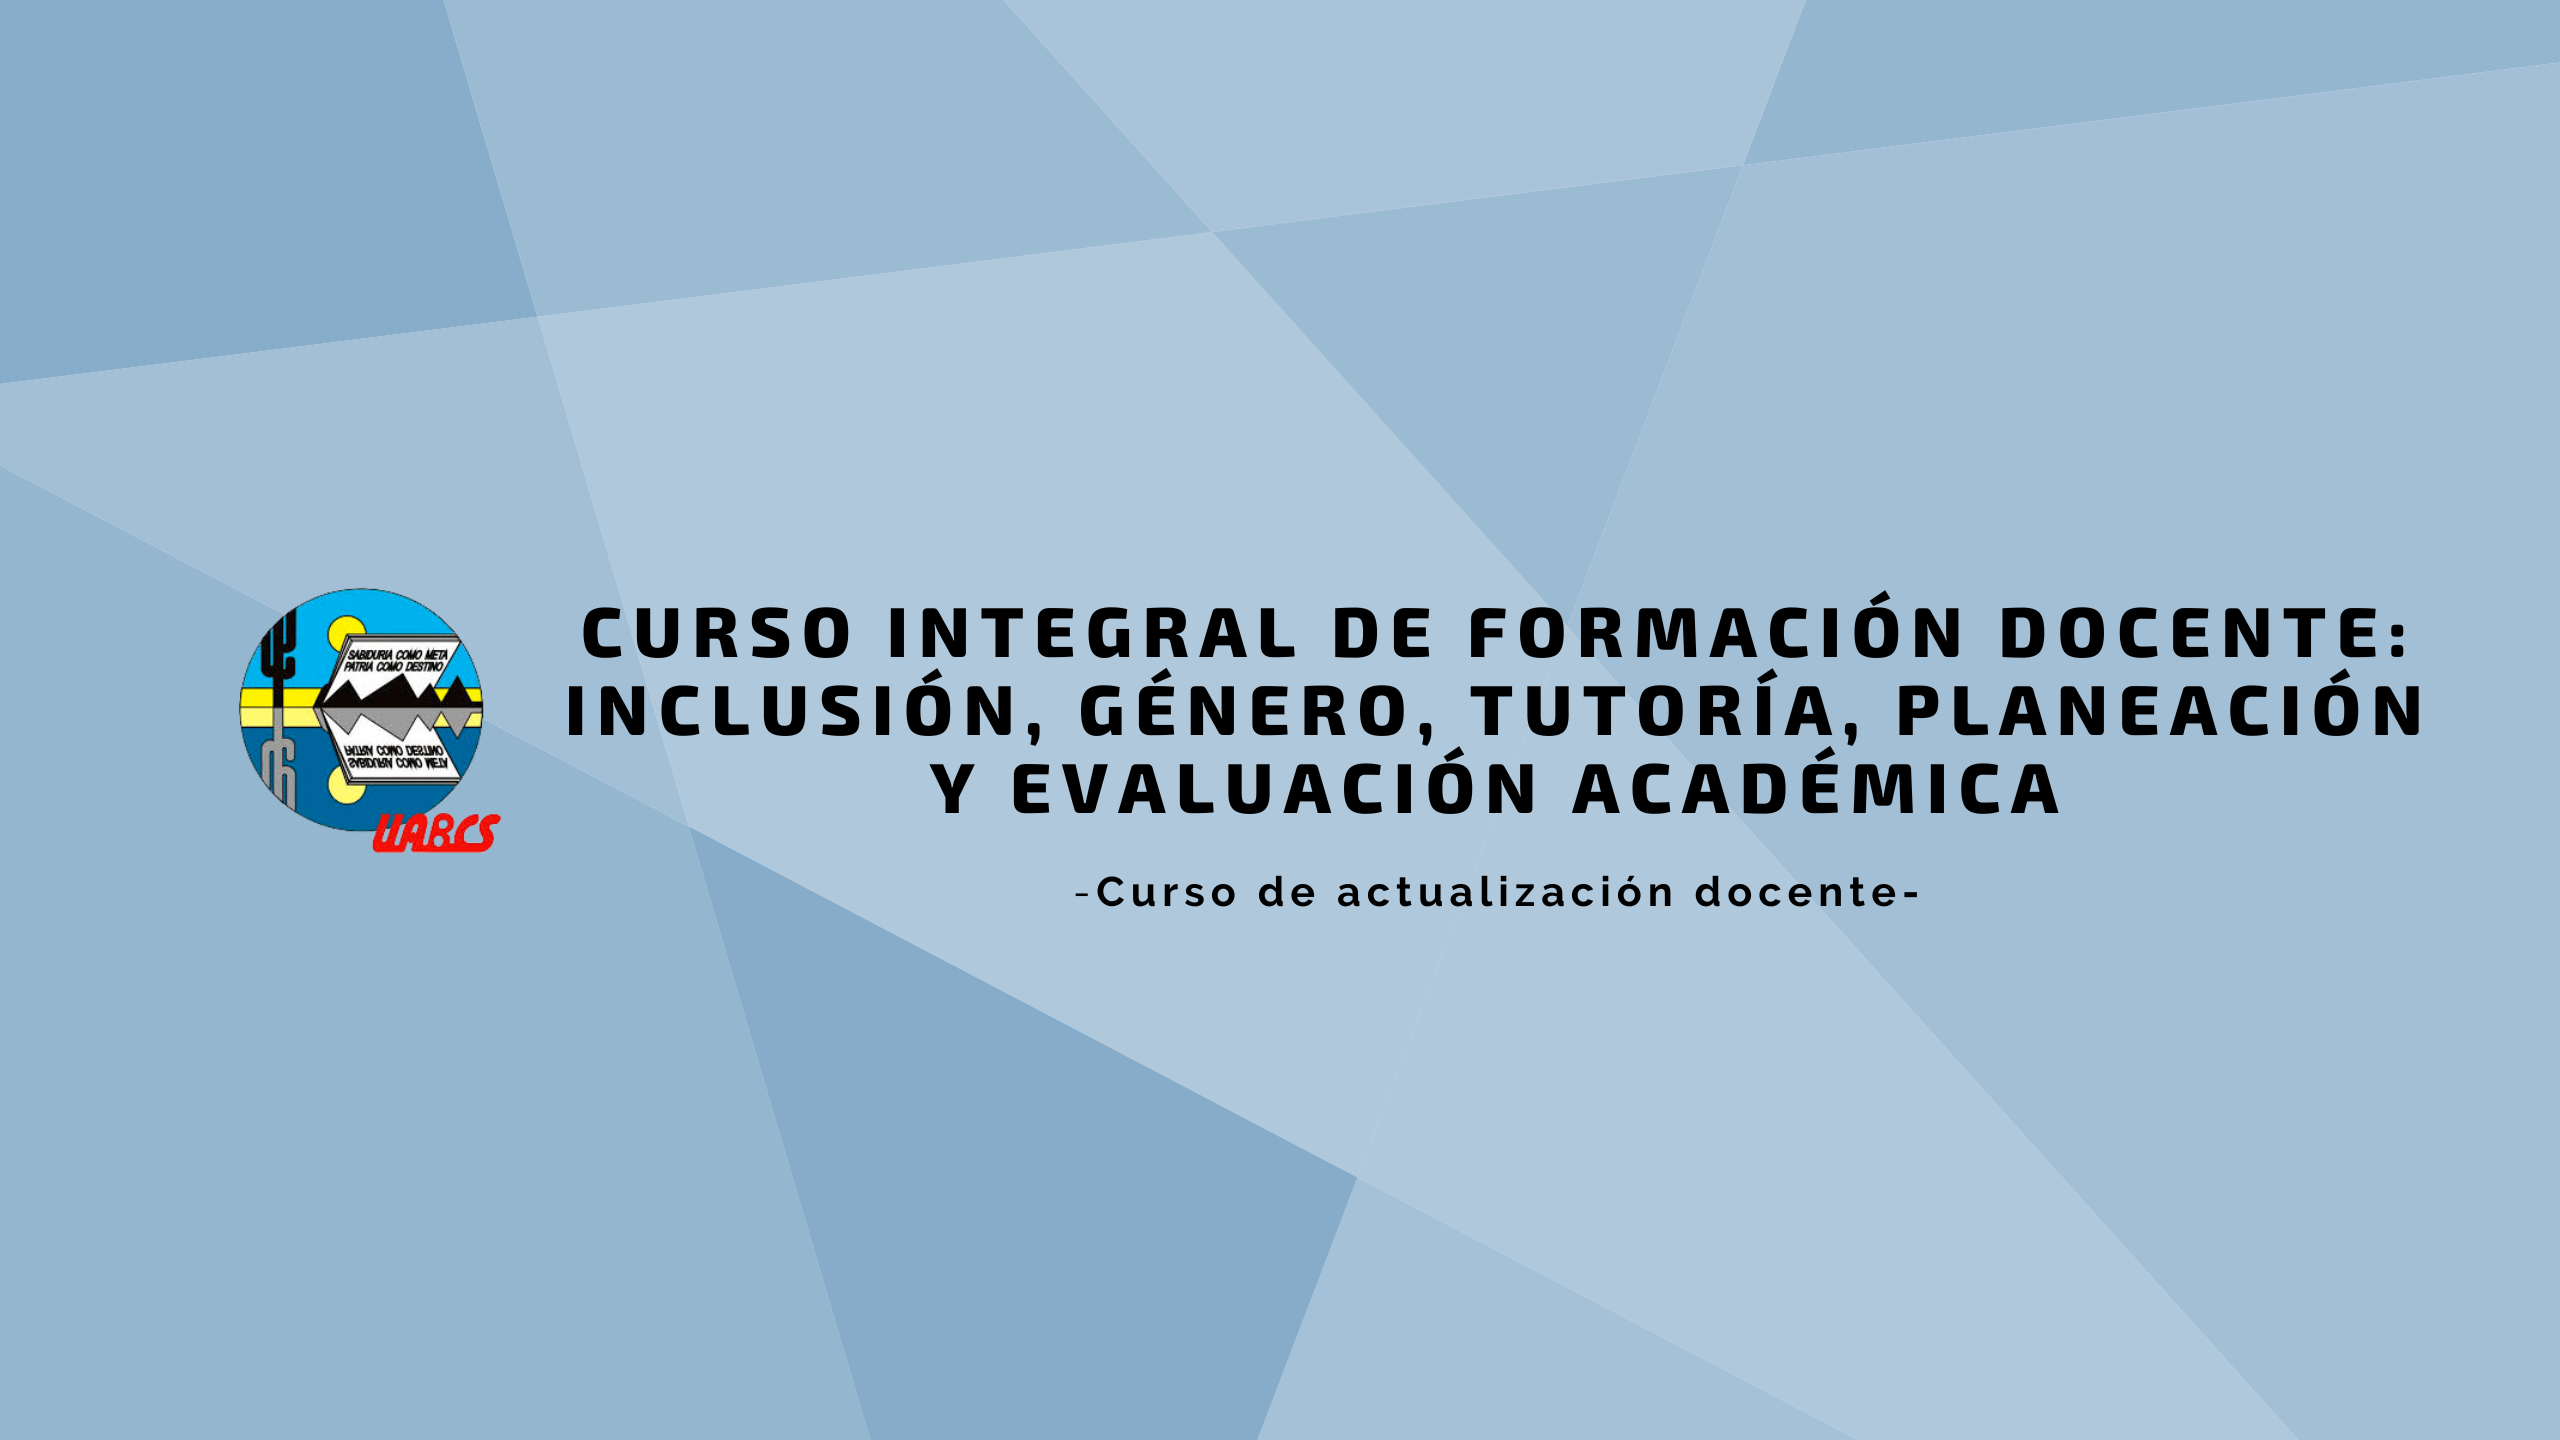 Course Image Curso integral de formación docente: inclusión, género, tutoría, planeación y evaluación académica